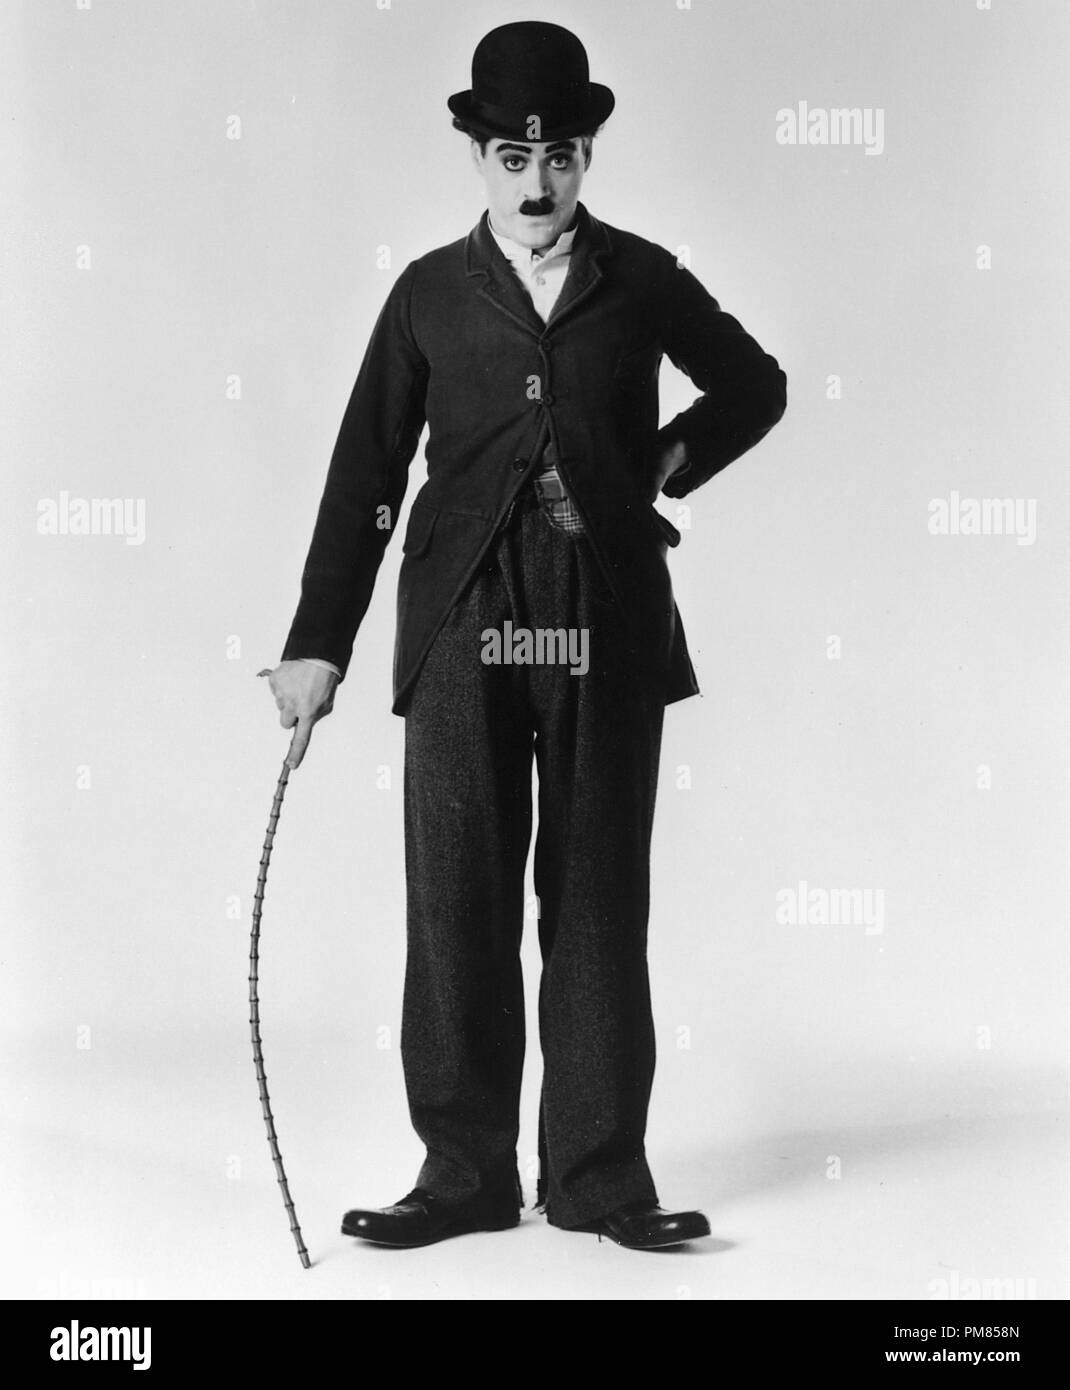 Film Still oder Werbung noch von 'Chaplin' Robert Downey Jr. © 1992 Tri-Star Alle Rechte vorbehalten Datei Referenz # 31487 046 THA für die redaktionelle Nutzung nur Stockfoto